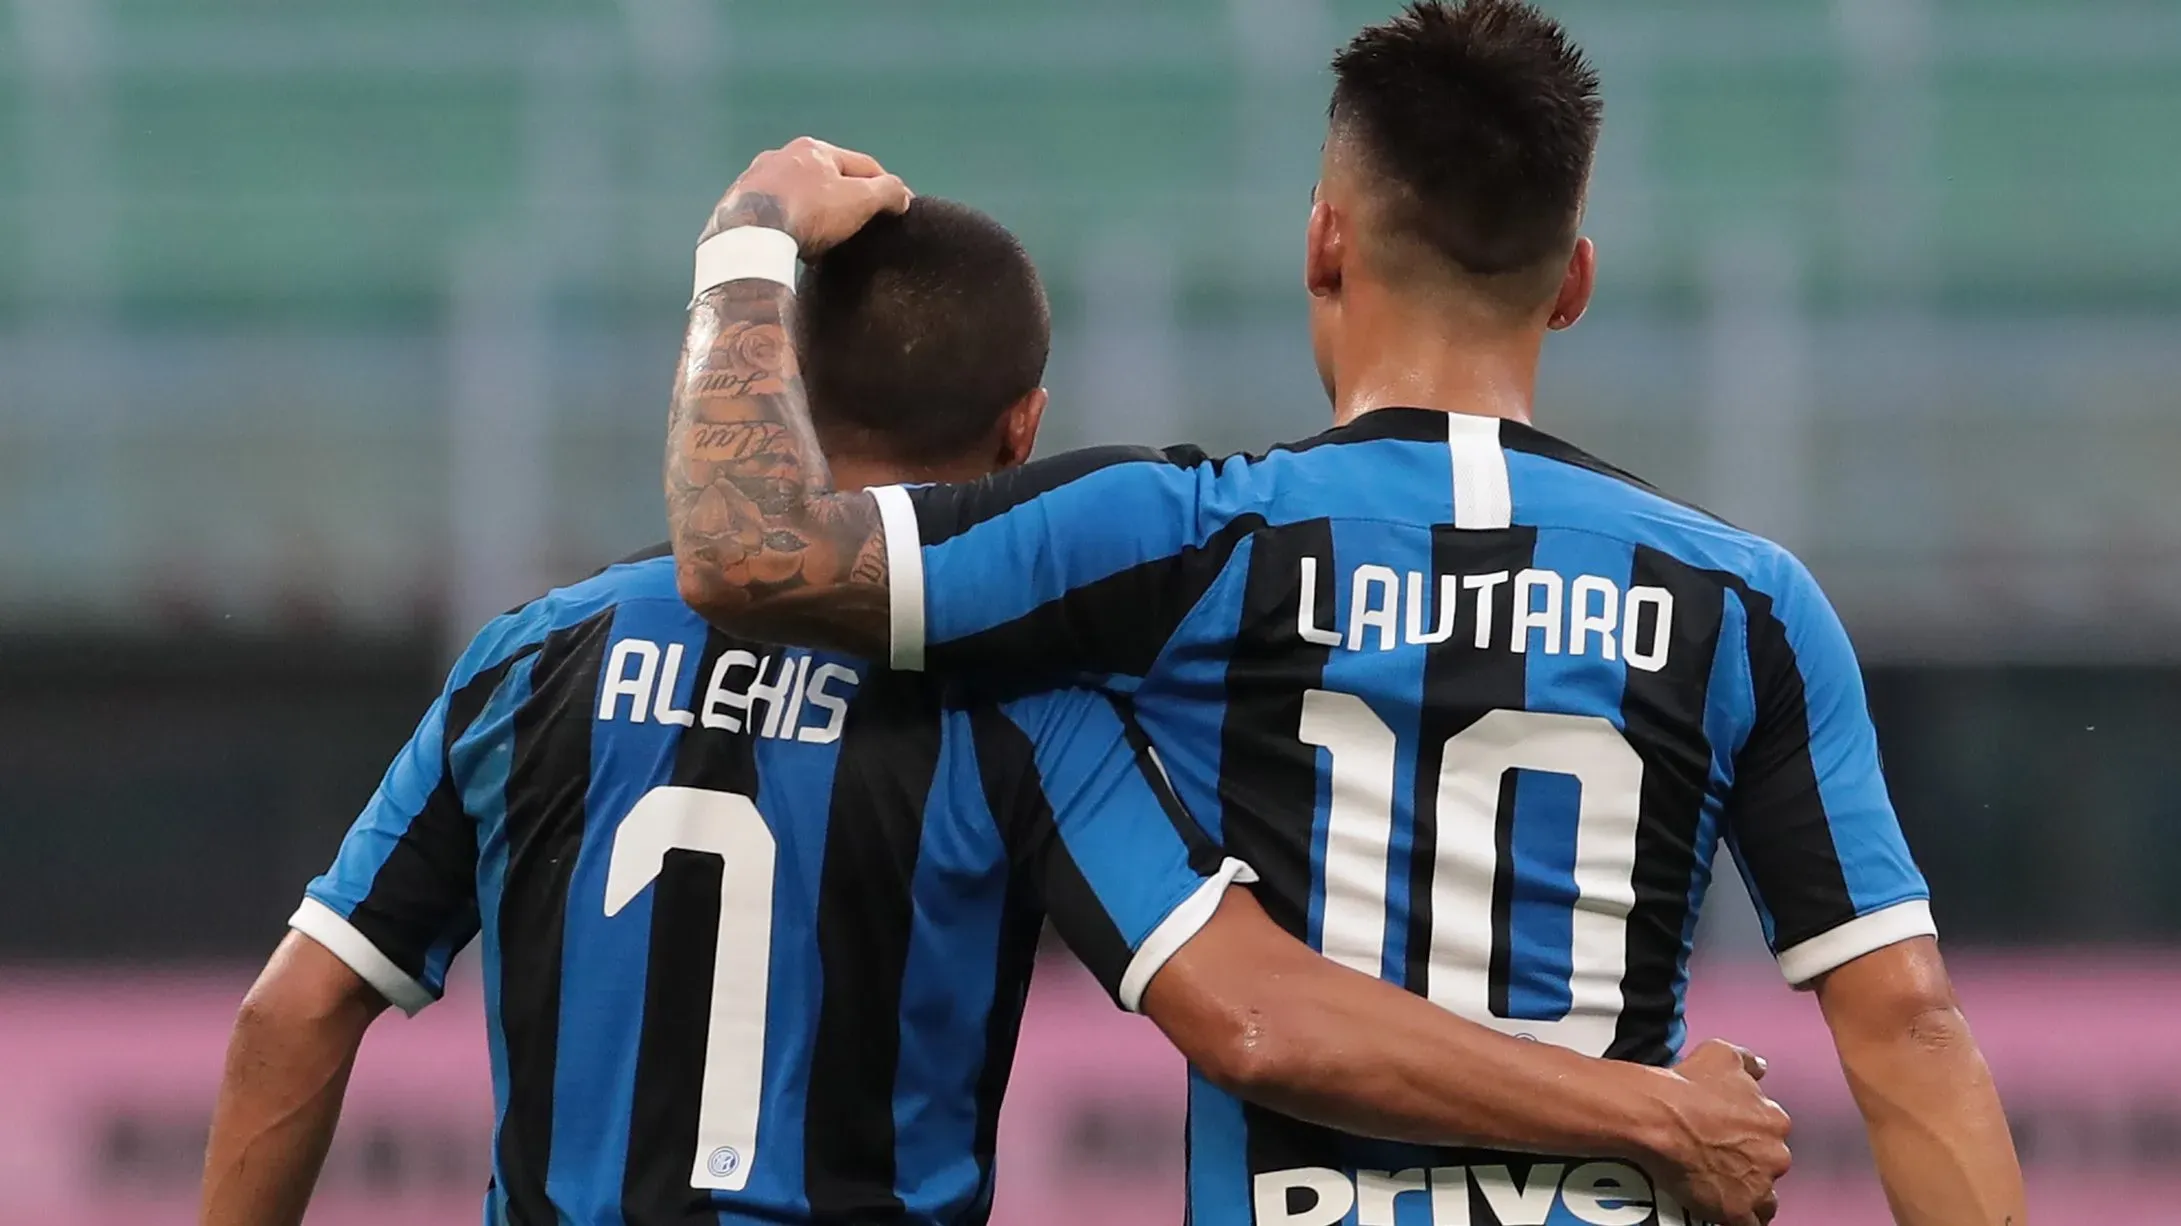 Alexis Sánchez y Lautaro Martínez. Tranquilamente podría haber espacio para los dos en el Inter de Milán.Getty Images.